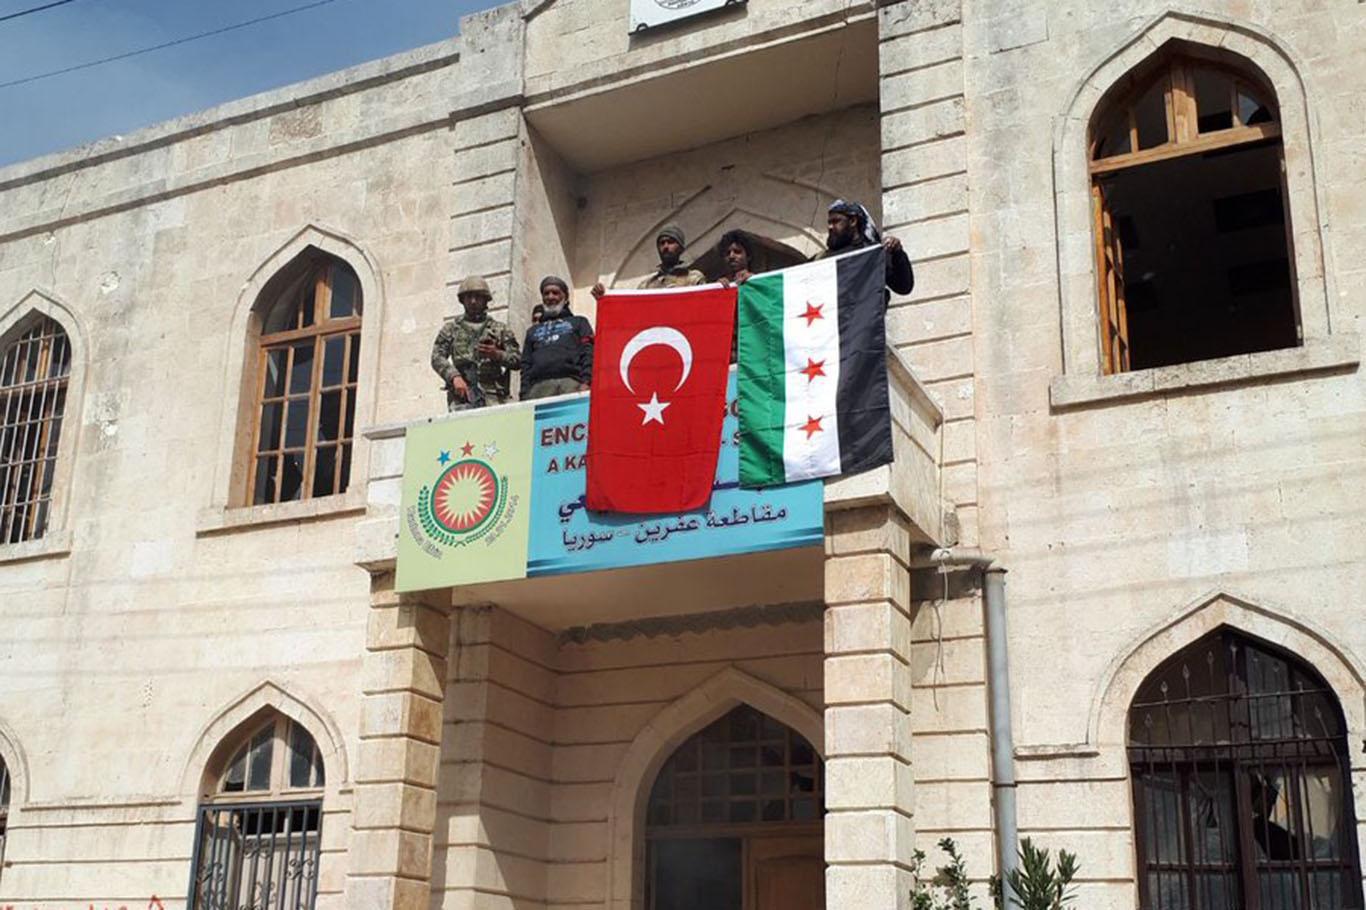 Security activities in Afrin